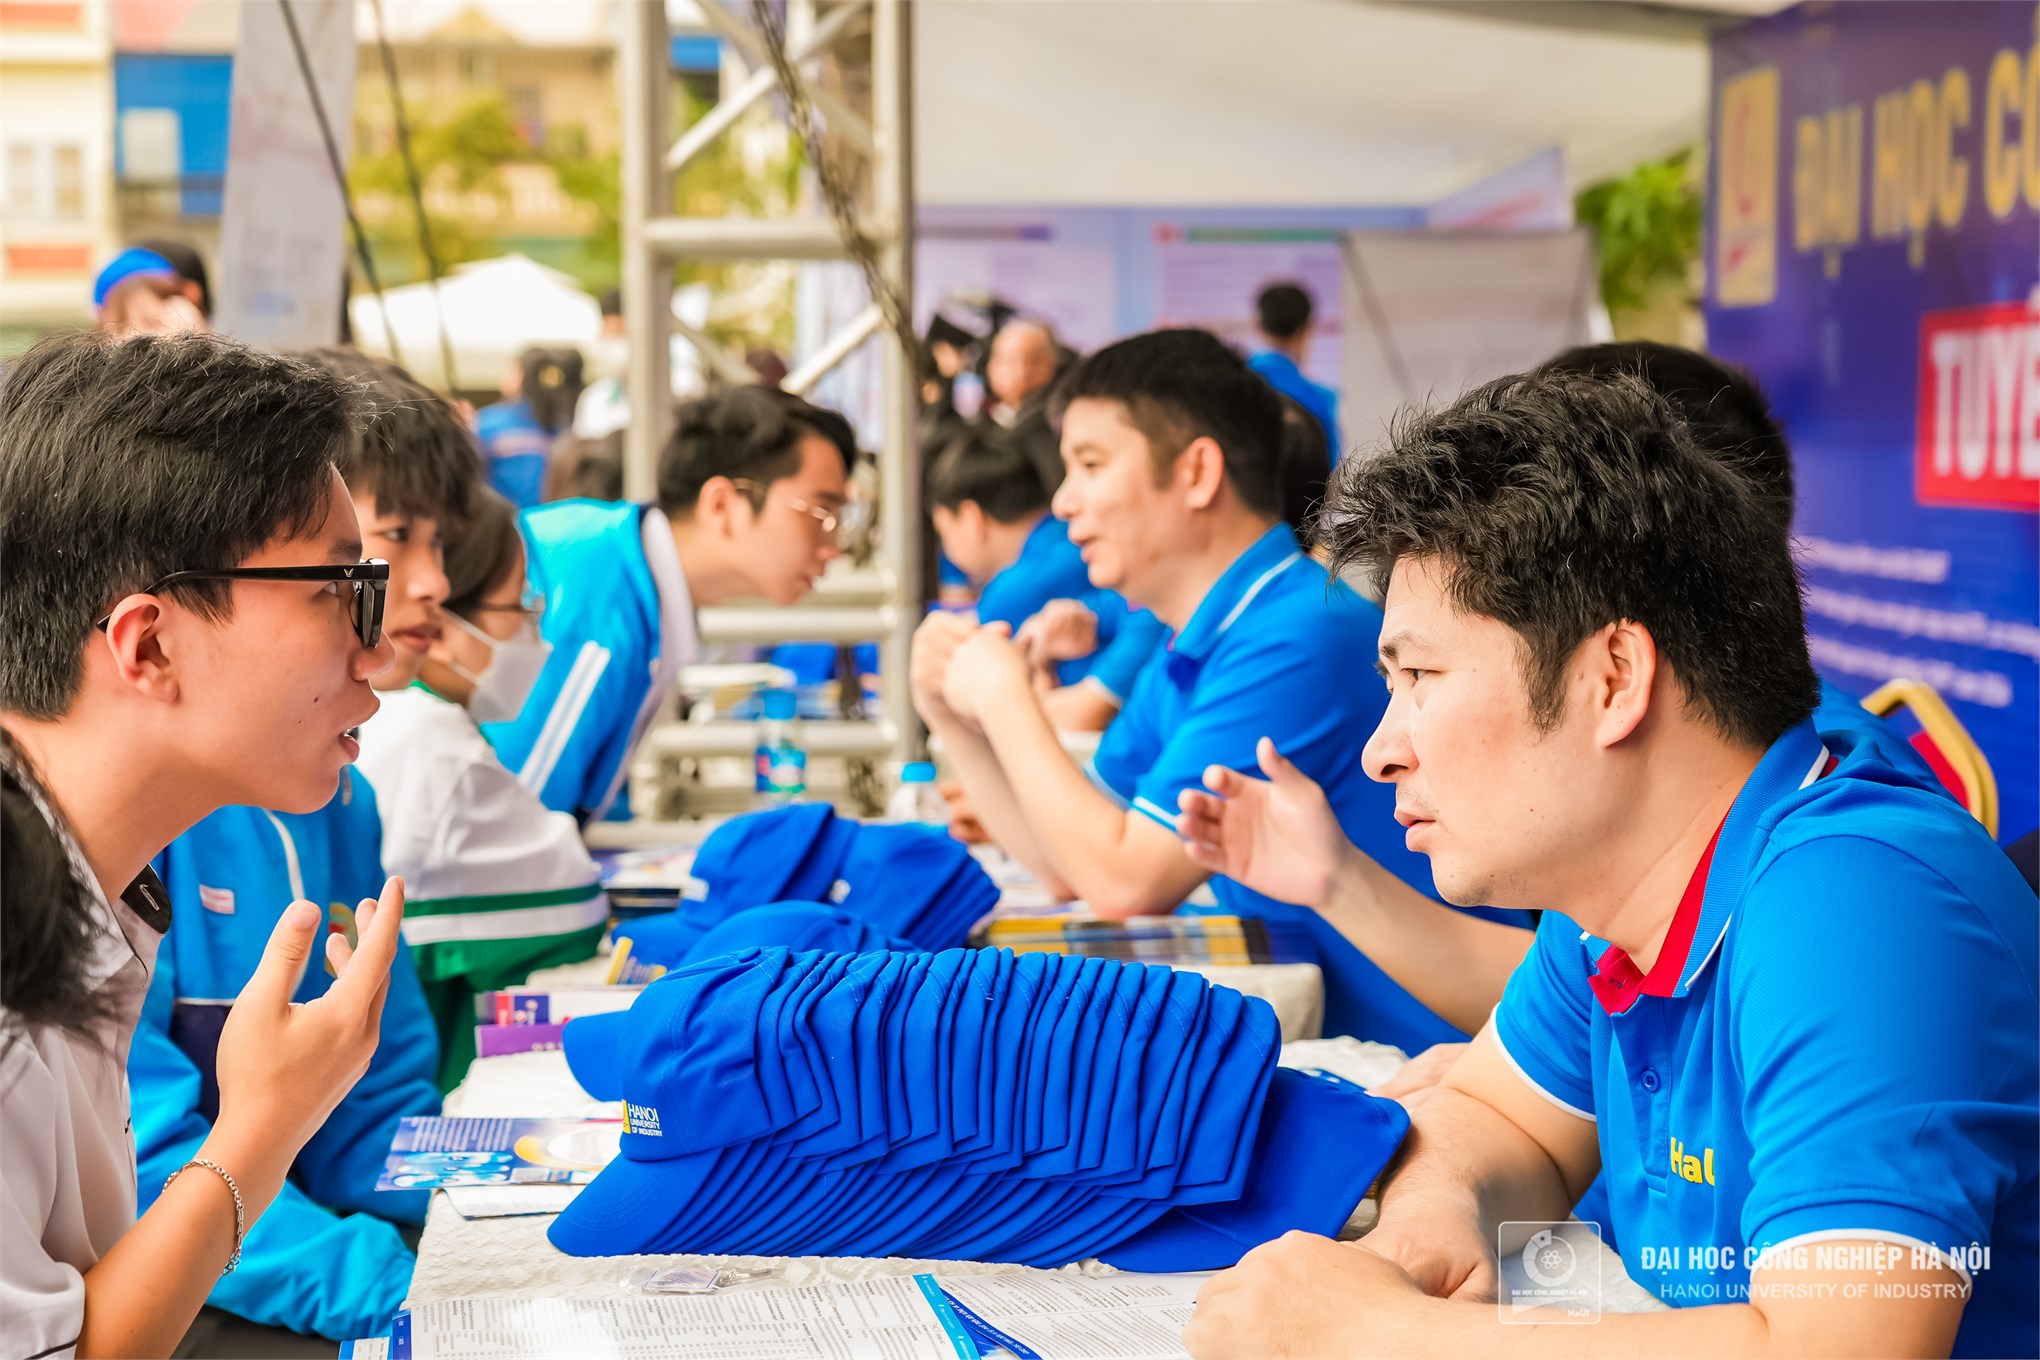 HaUI trực tiếp giải đáp thắc mắc, tư vấn tuyển sinh cho hơn 3.500 học sinh, phụ huynh tại Nam Định 